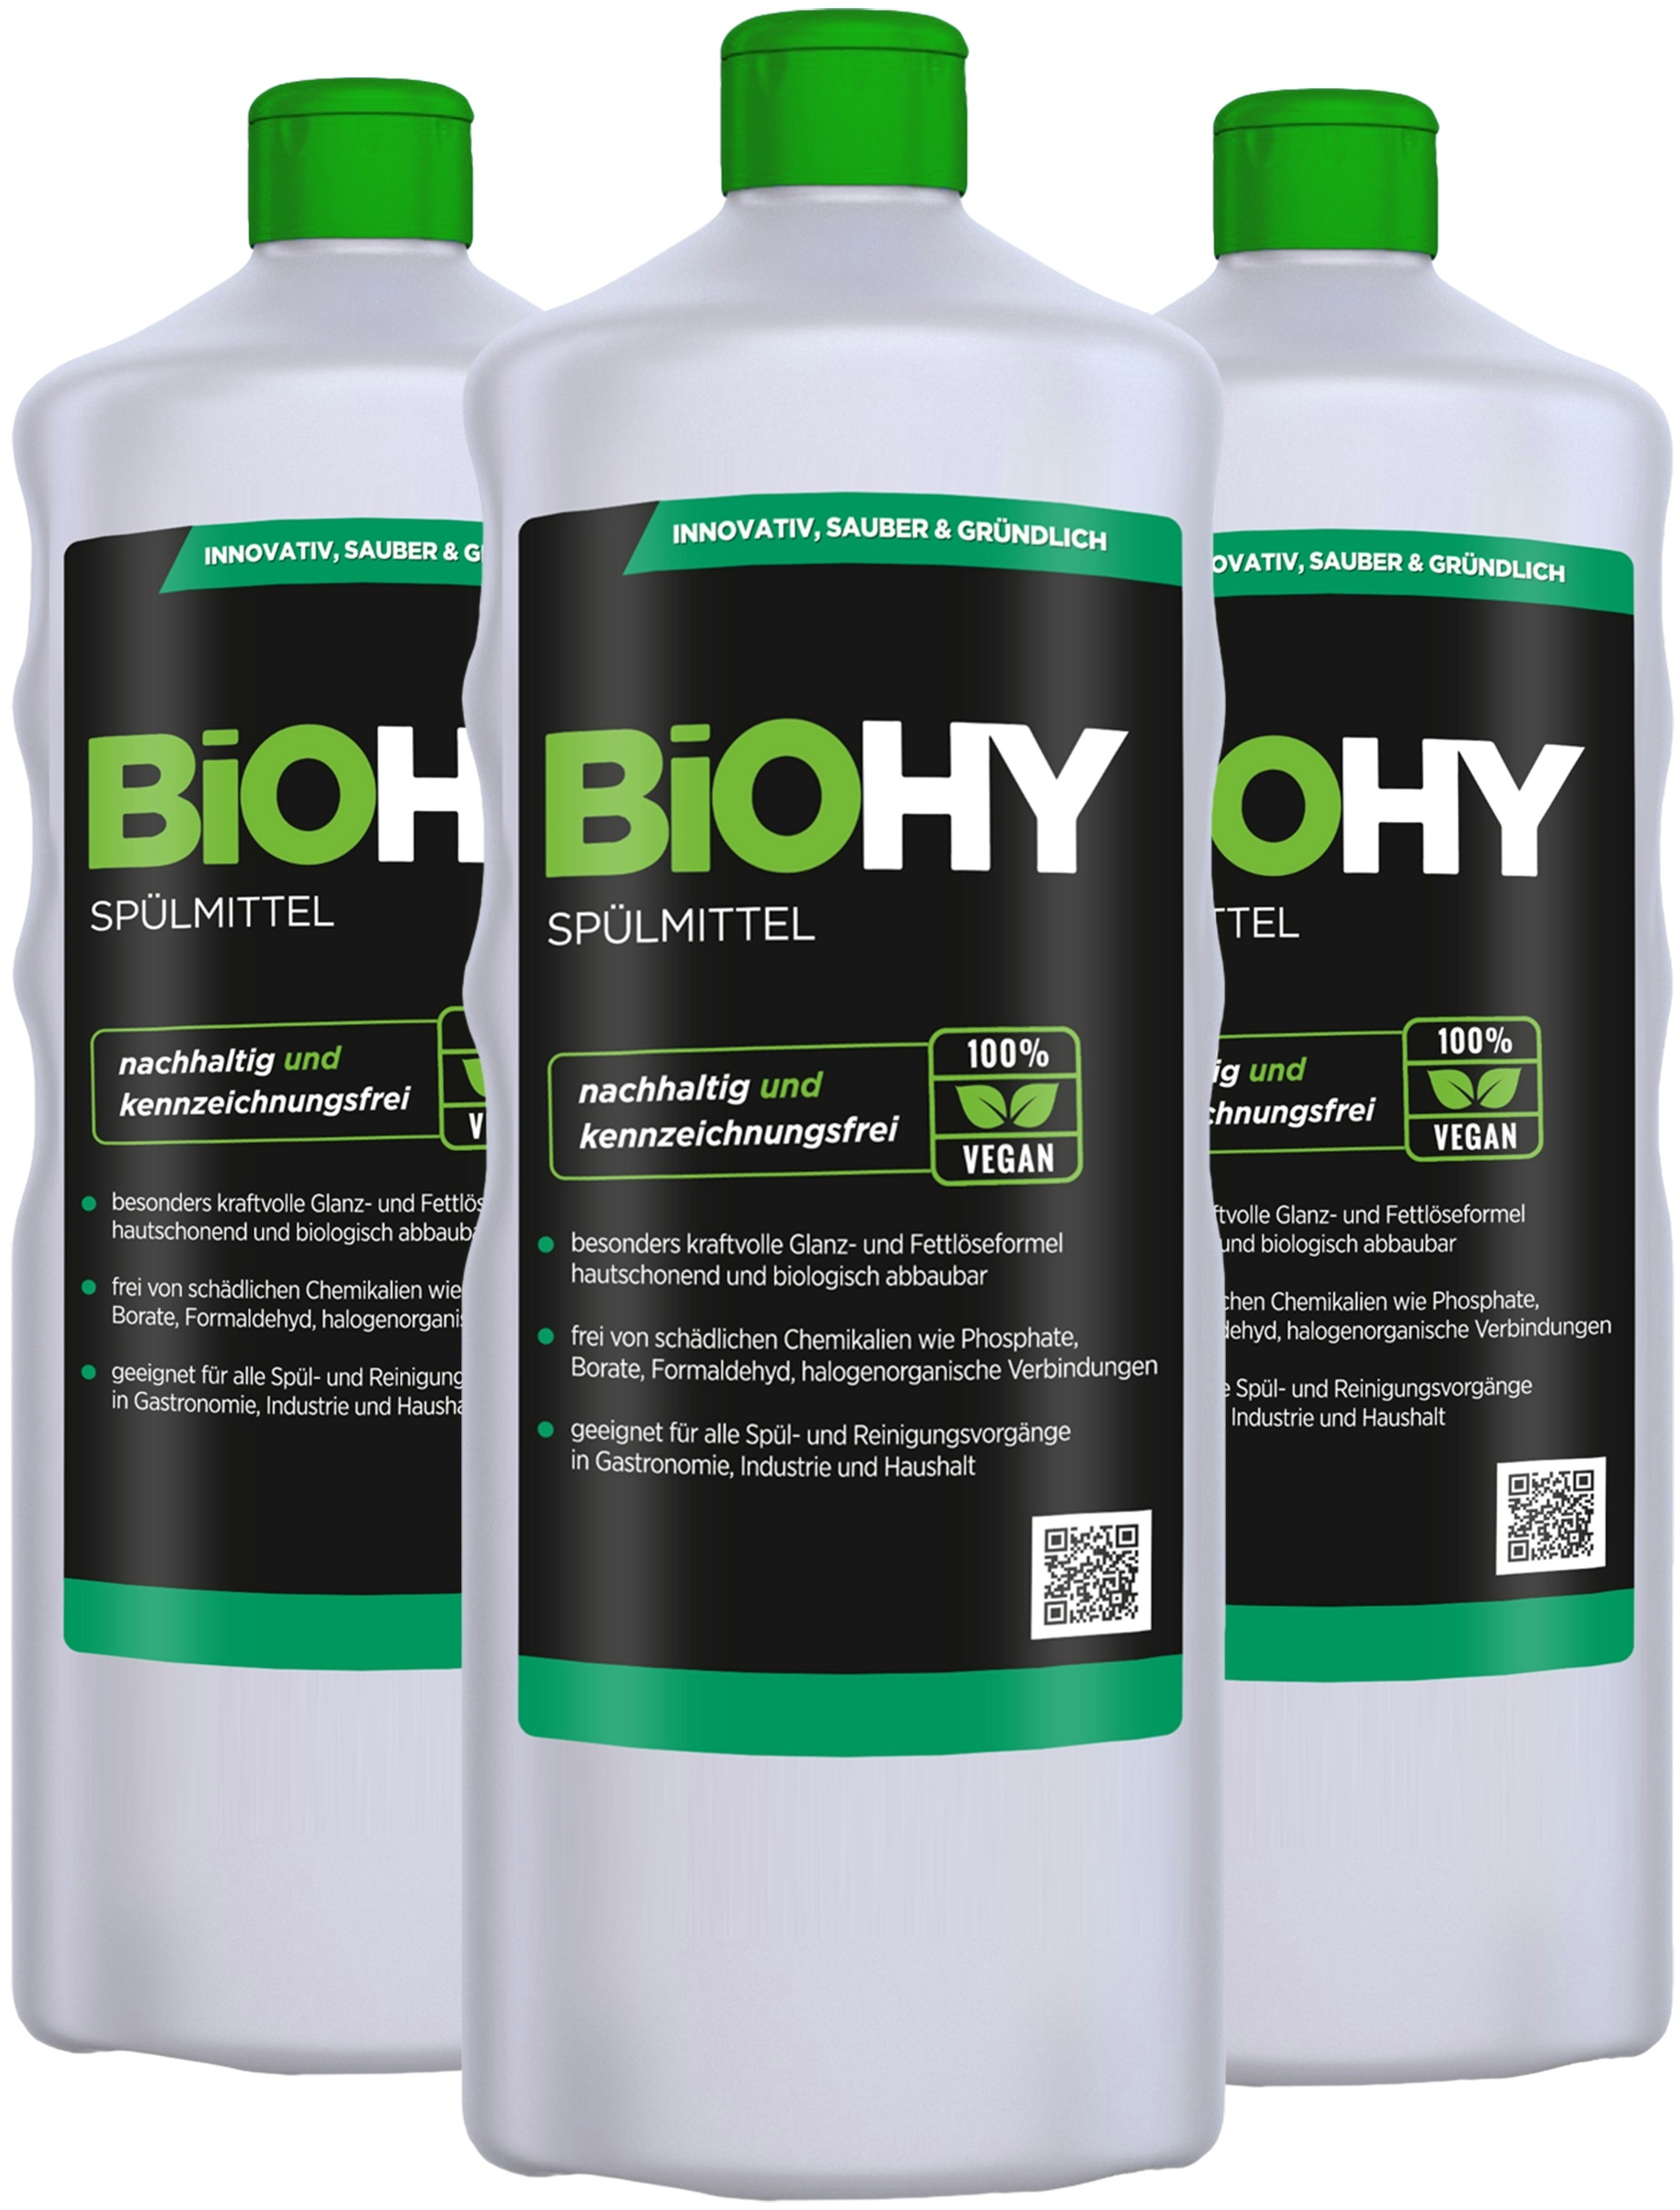 BiOHY Spülmittel (3x1l Flasche) | Frei von schädlichen Chemikalien & biologisch abbaubar | Glanz- & Fettlöseformel